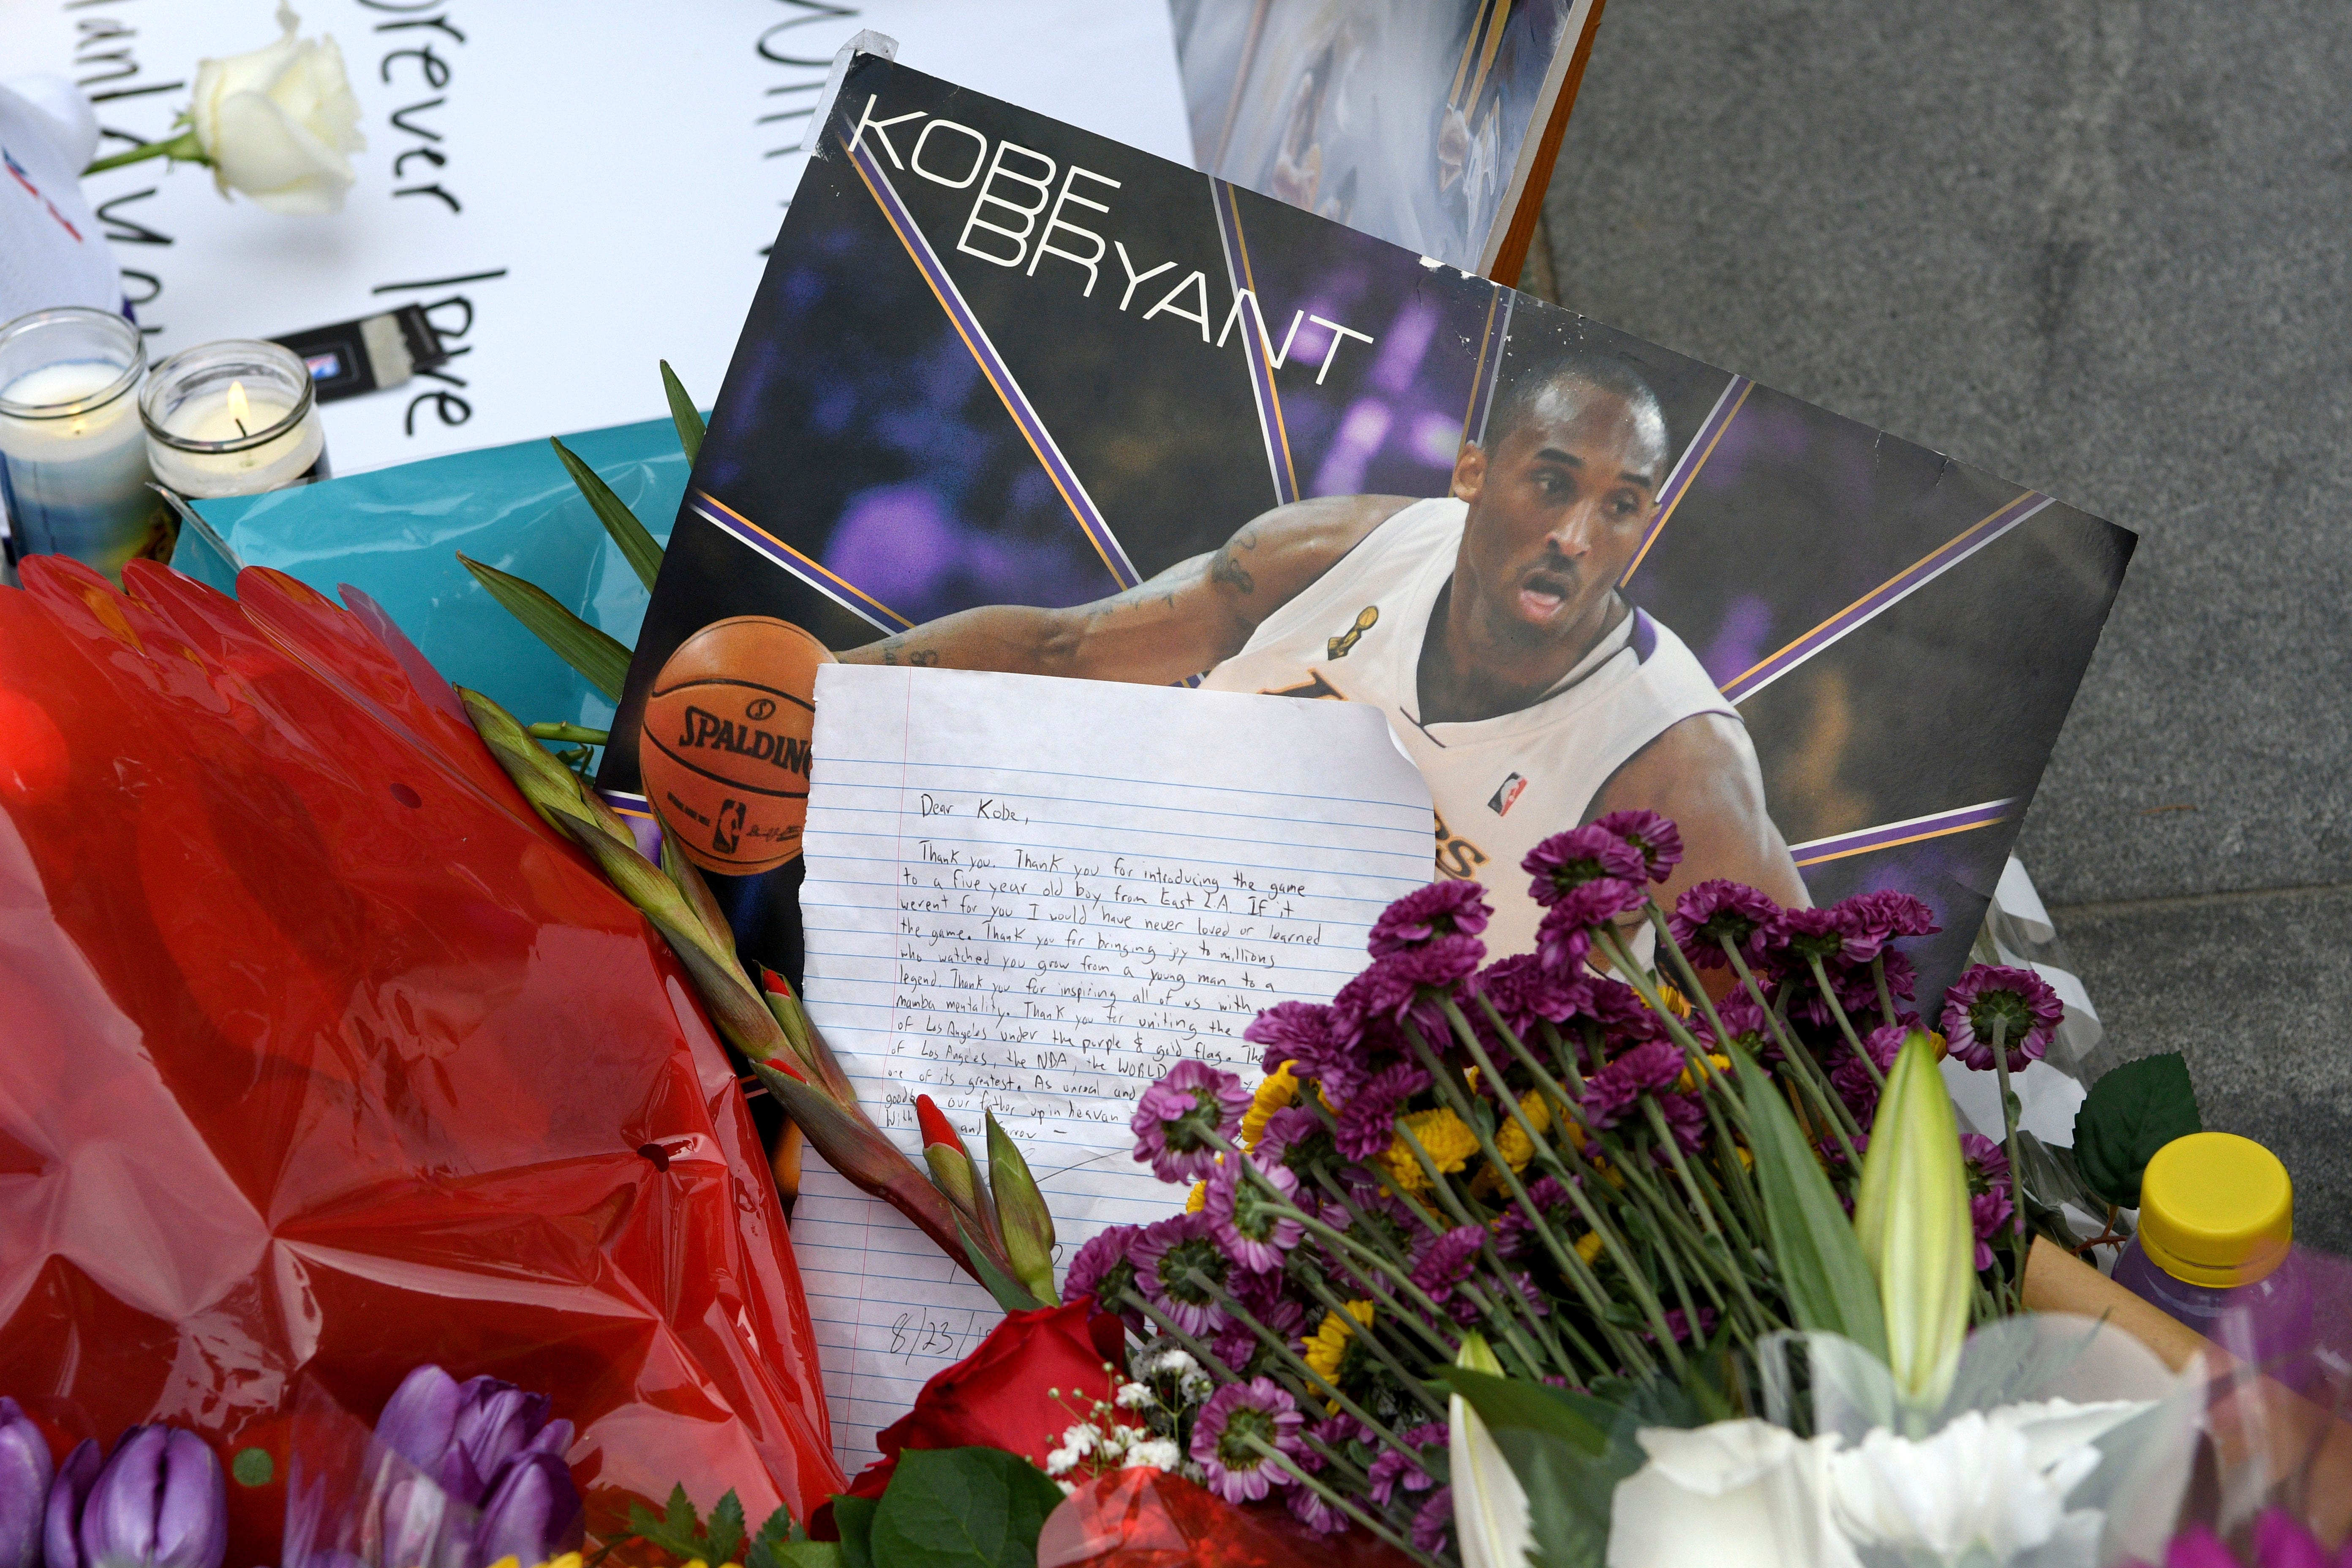 A memorial for Kobe Bryant near Staples Center.